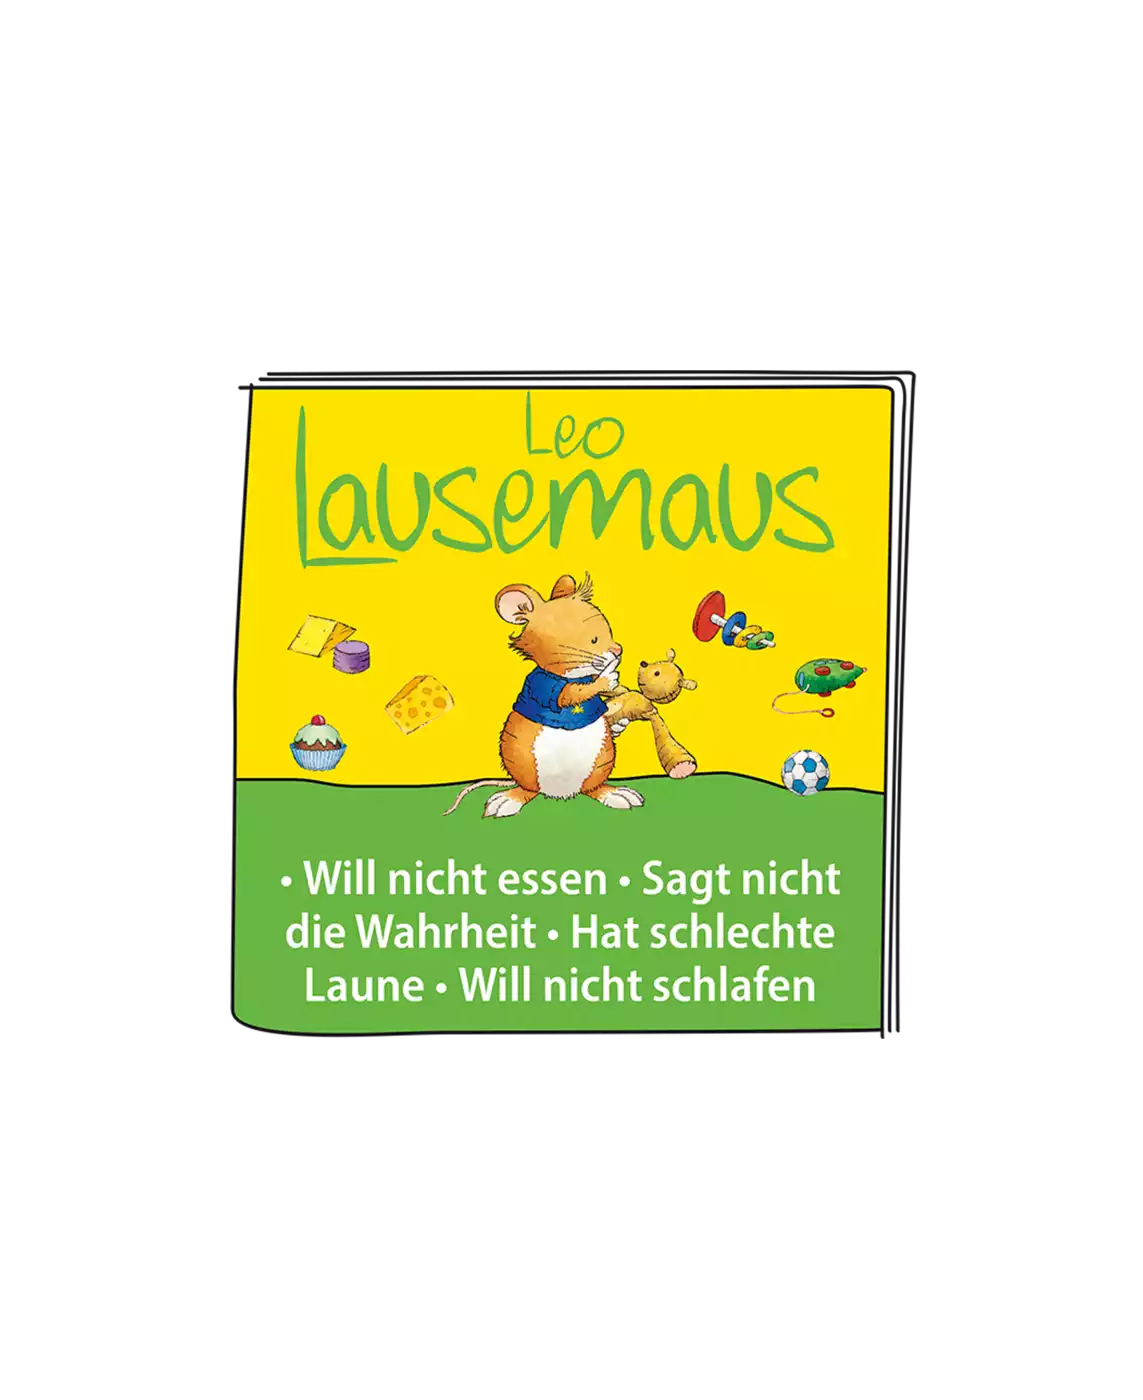 Leo Lausemaus - Das Orginal Hörspiel tonies 2000573182309 5